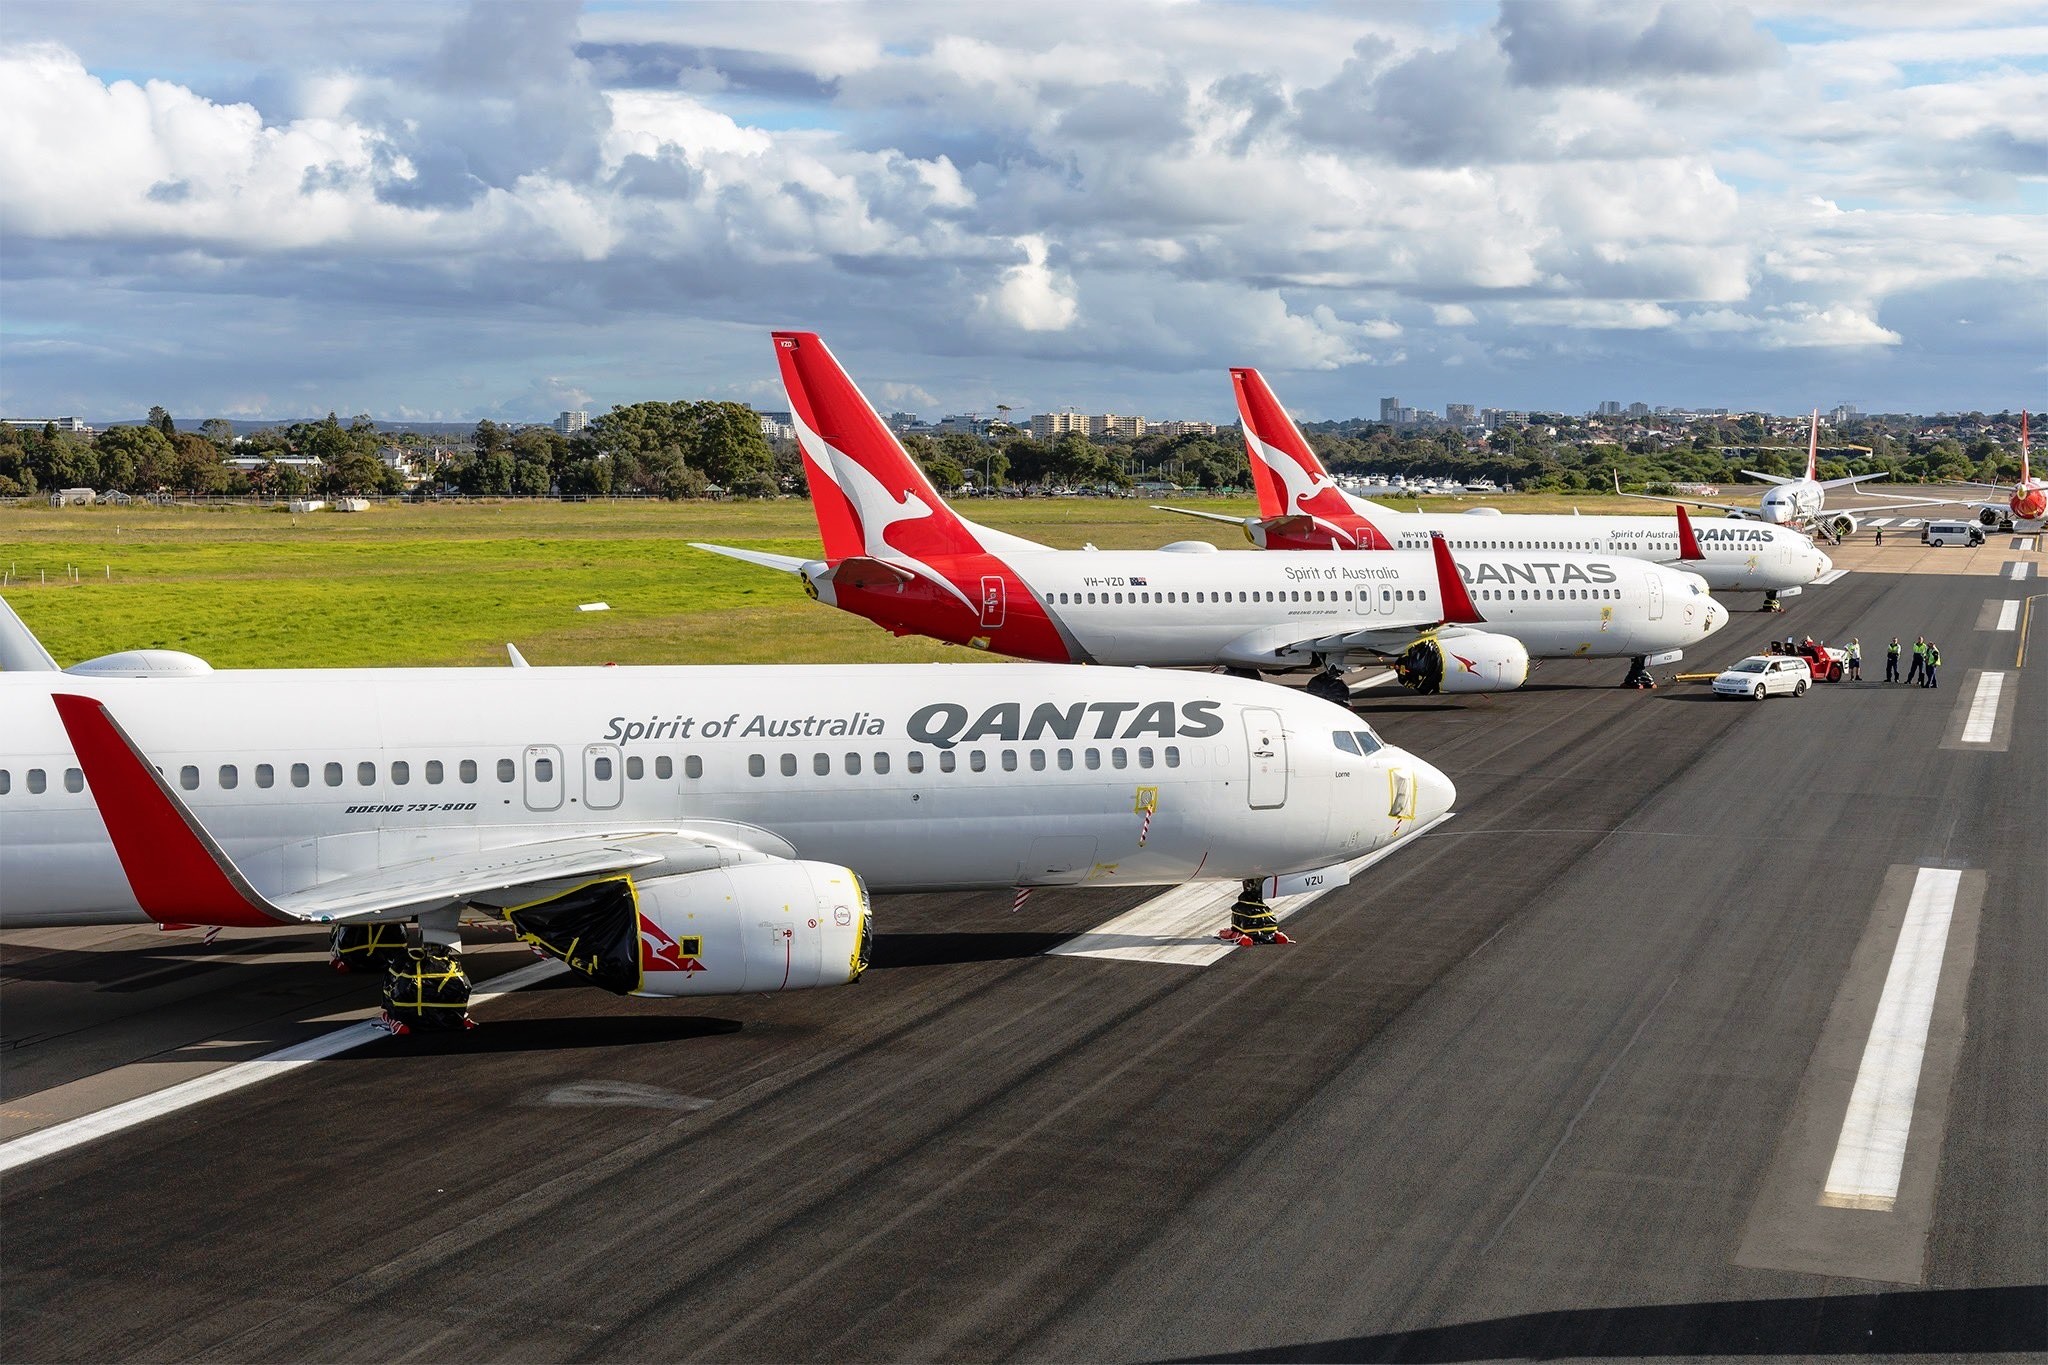 Avustralya’da Uçak Biletleri Çok Pahalı Hale Geldi